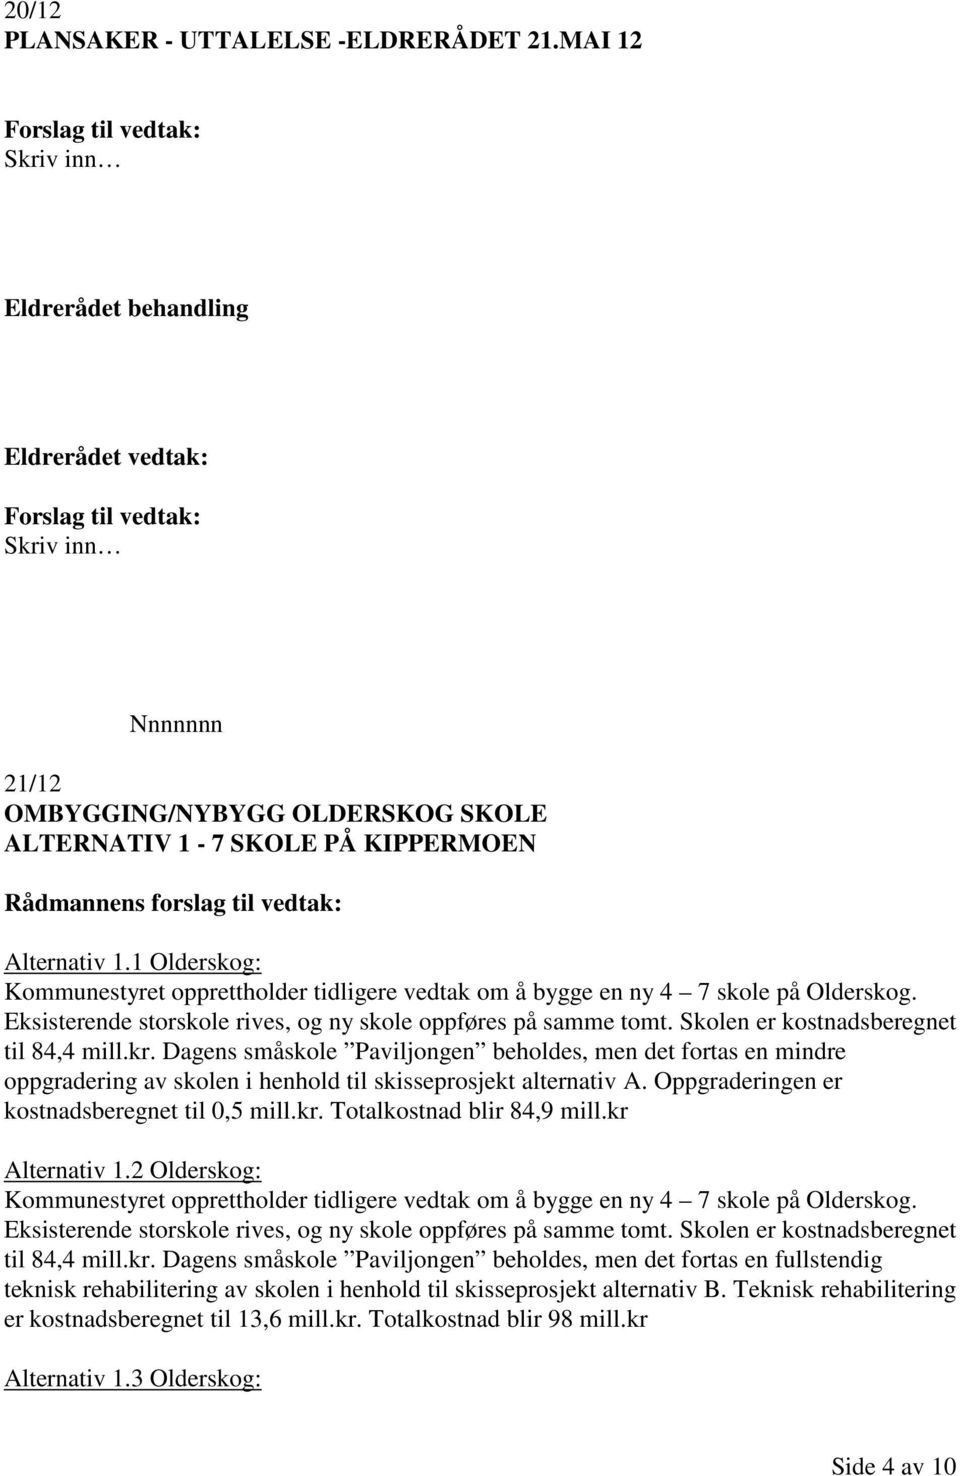 Rådmannens forslag til vedtak: Alternativ 1.1 Olderskog: Kommunestyret opprettholder tidligere vedtak om å bygge en ny 4 7 skole på Olderskog. til 84,4 mill.kr.